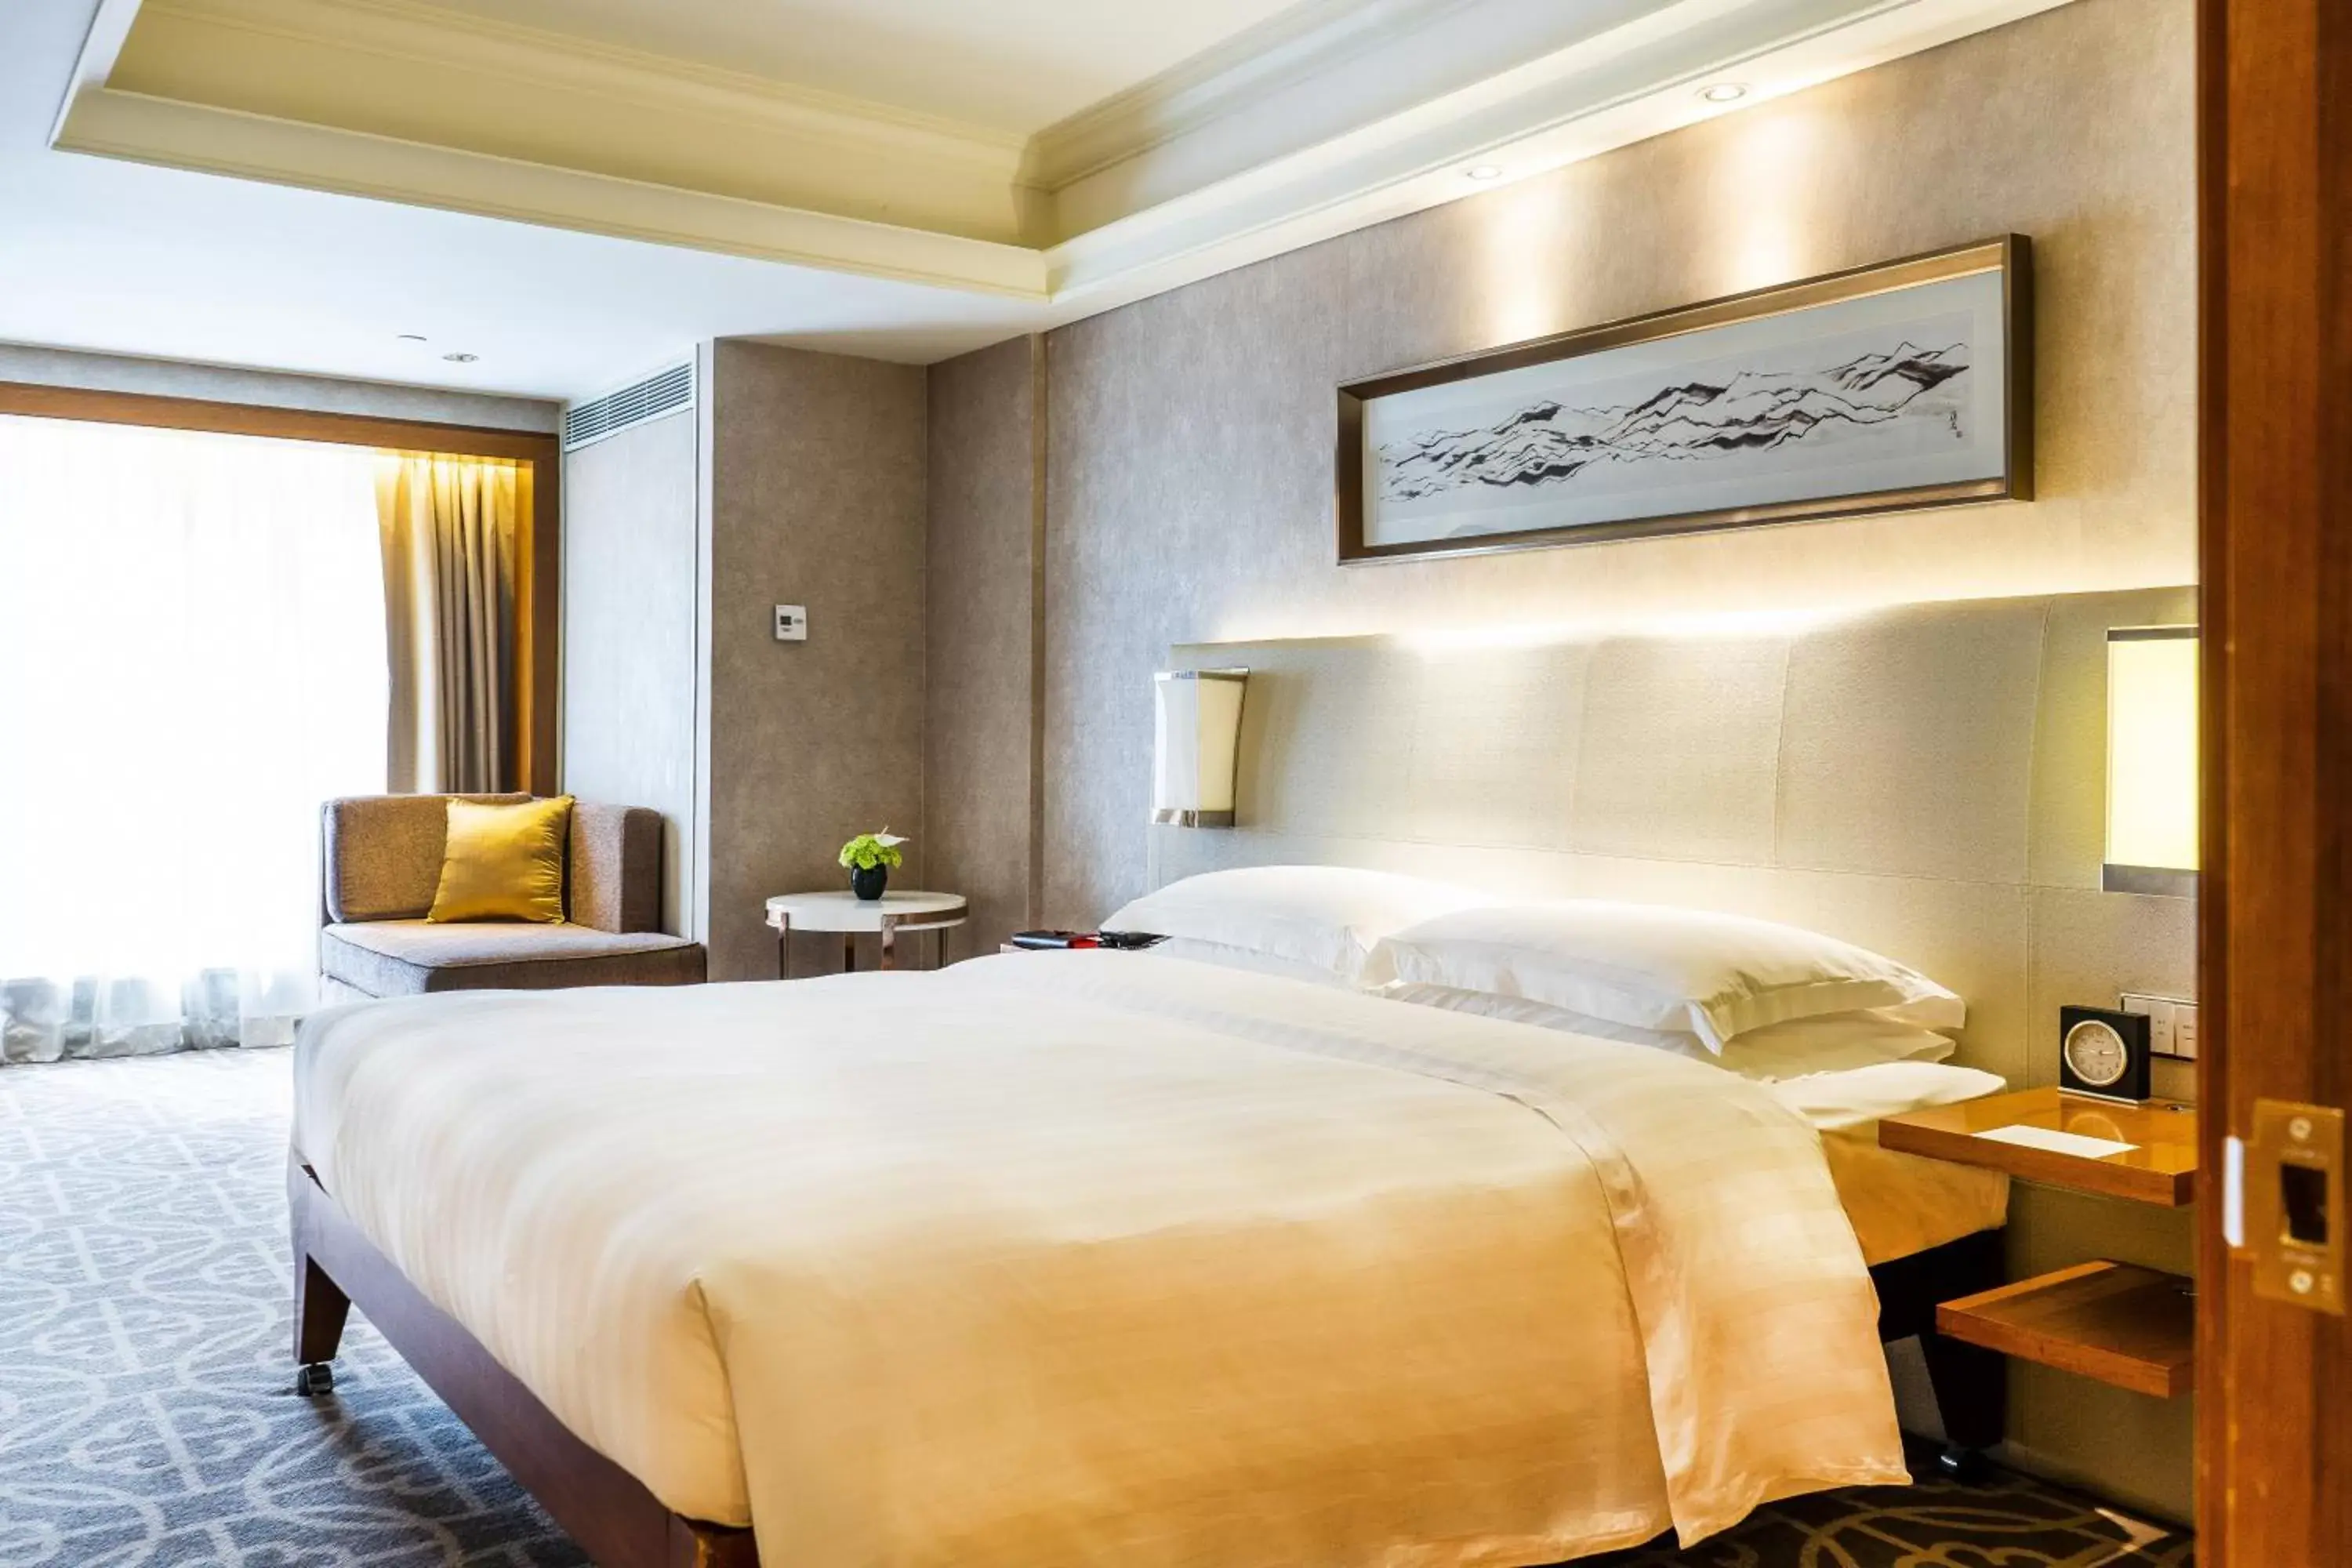 Bedroom, Bed in Grand Hyatt Beijing